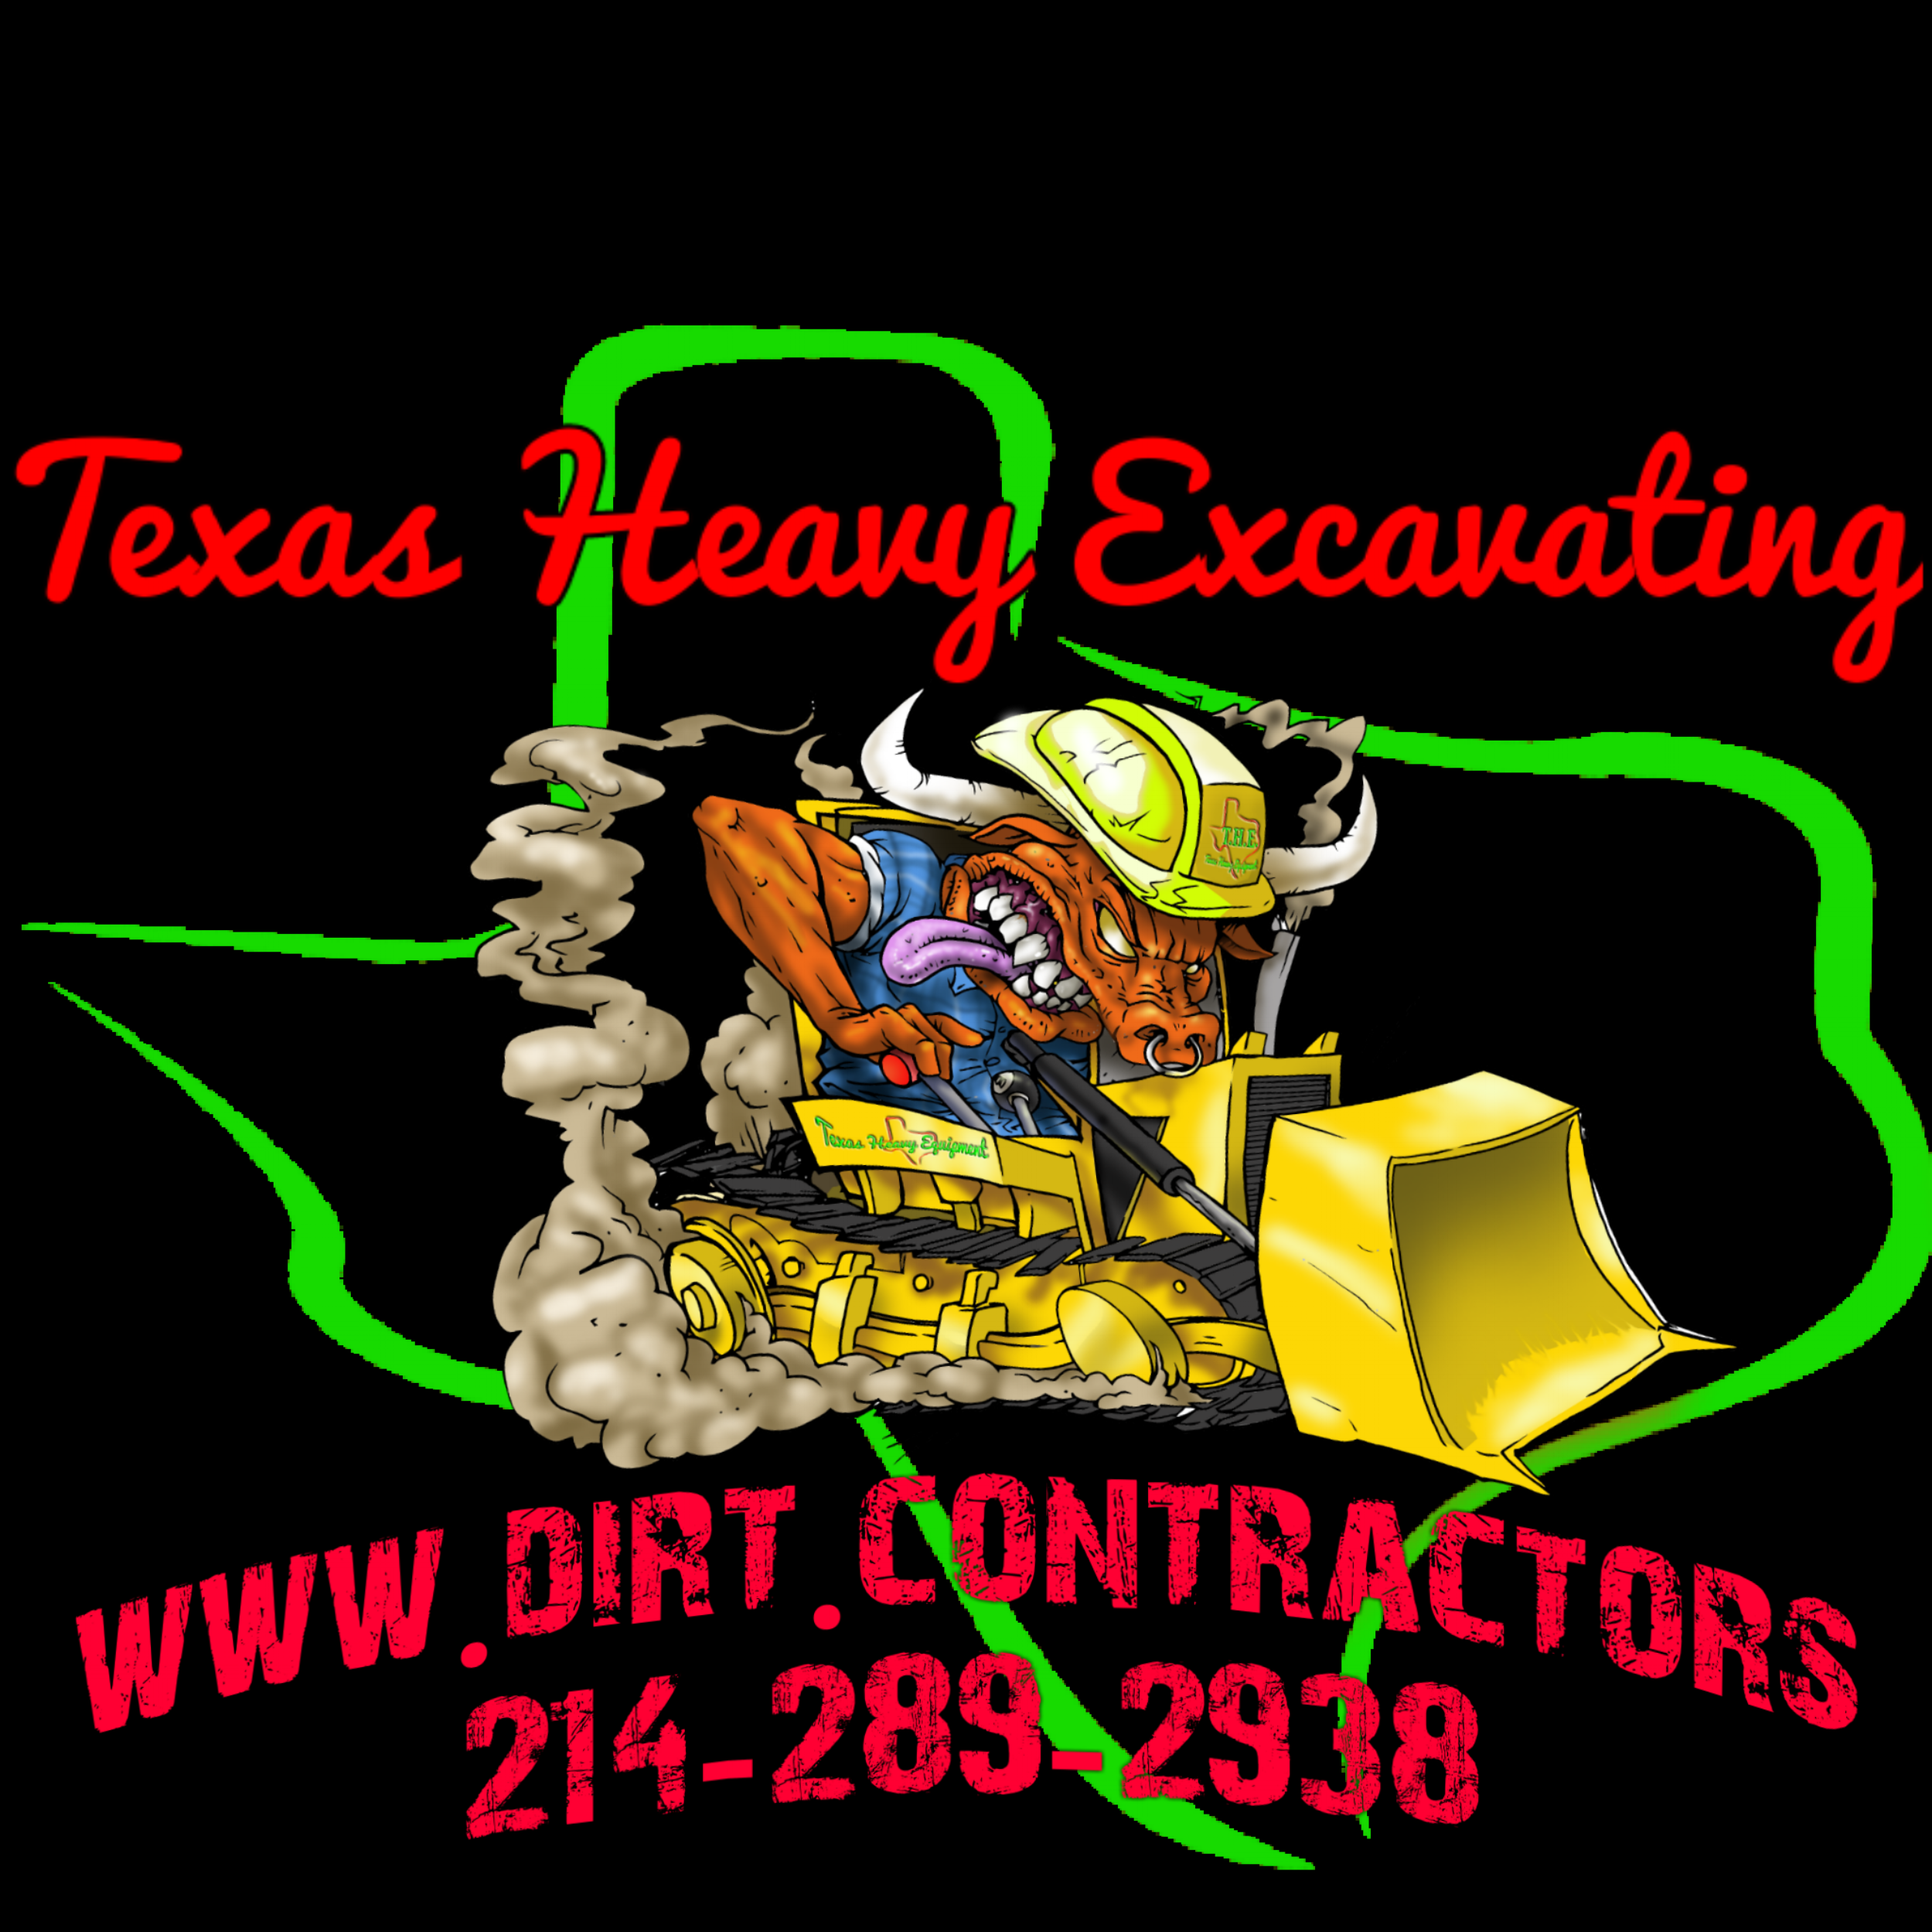 Texas Heavy Excavating